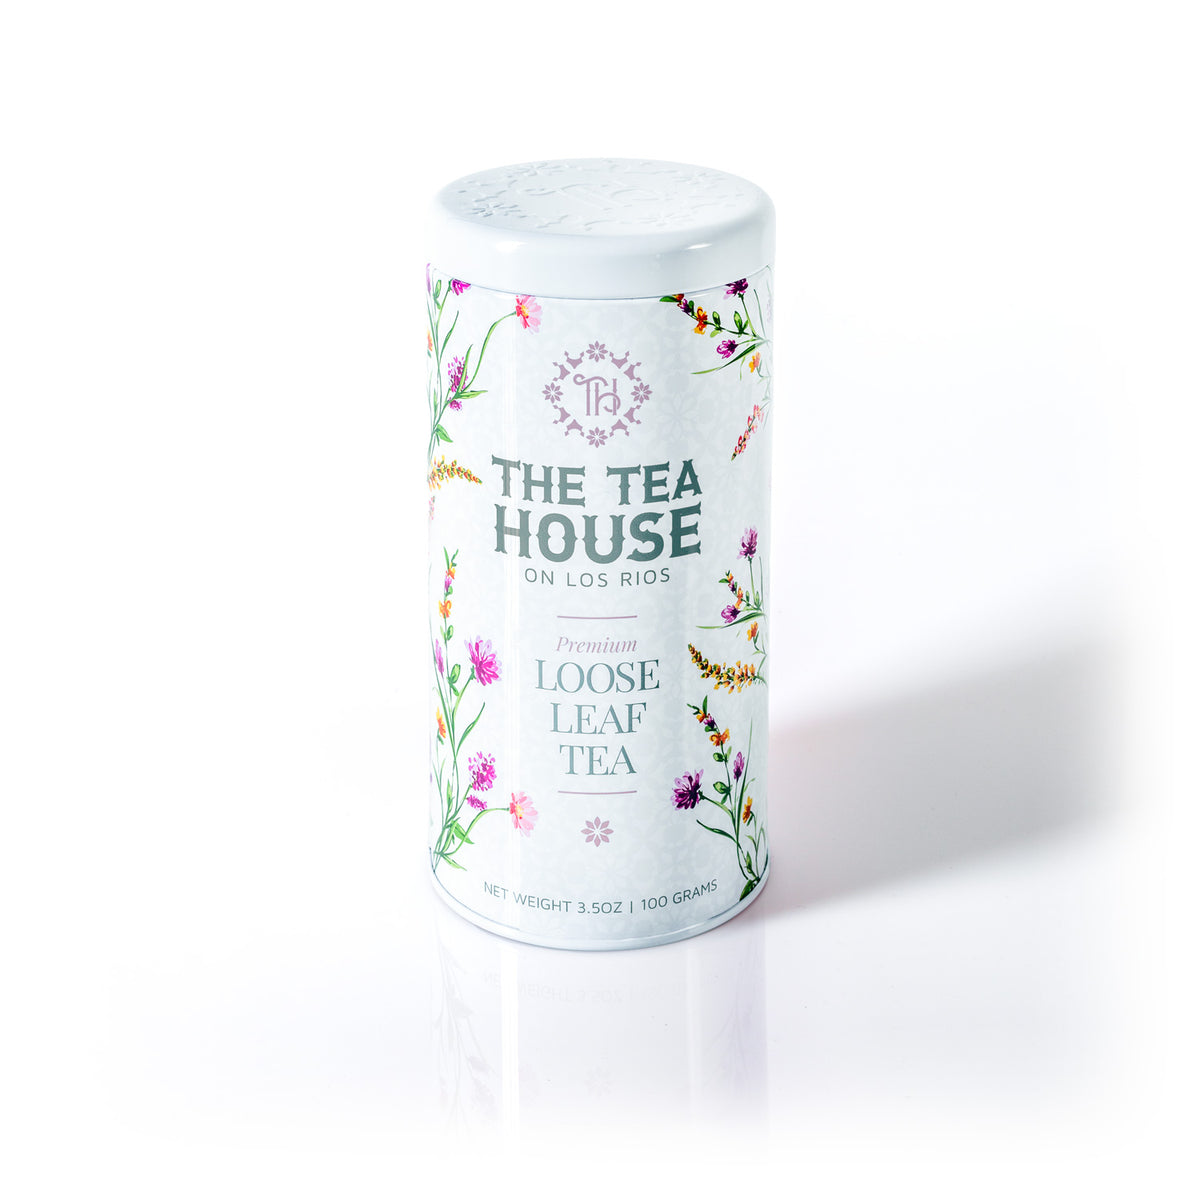 The Tea House on Los Rios presents a NEW 100g Loose Leaf Tea Tin Edition